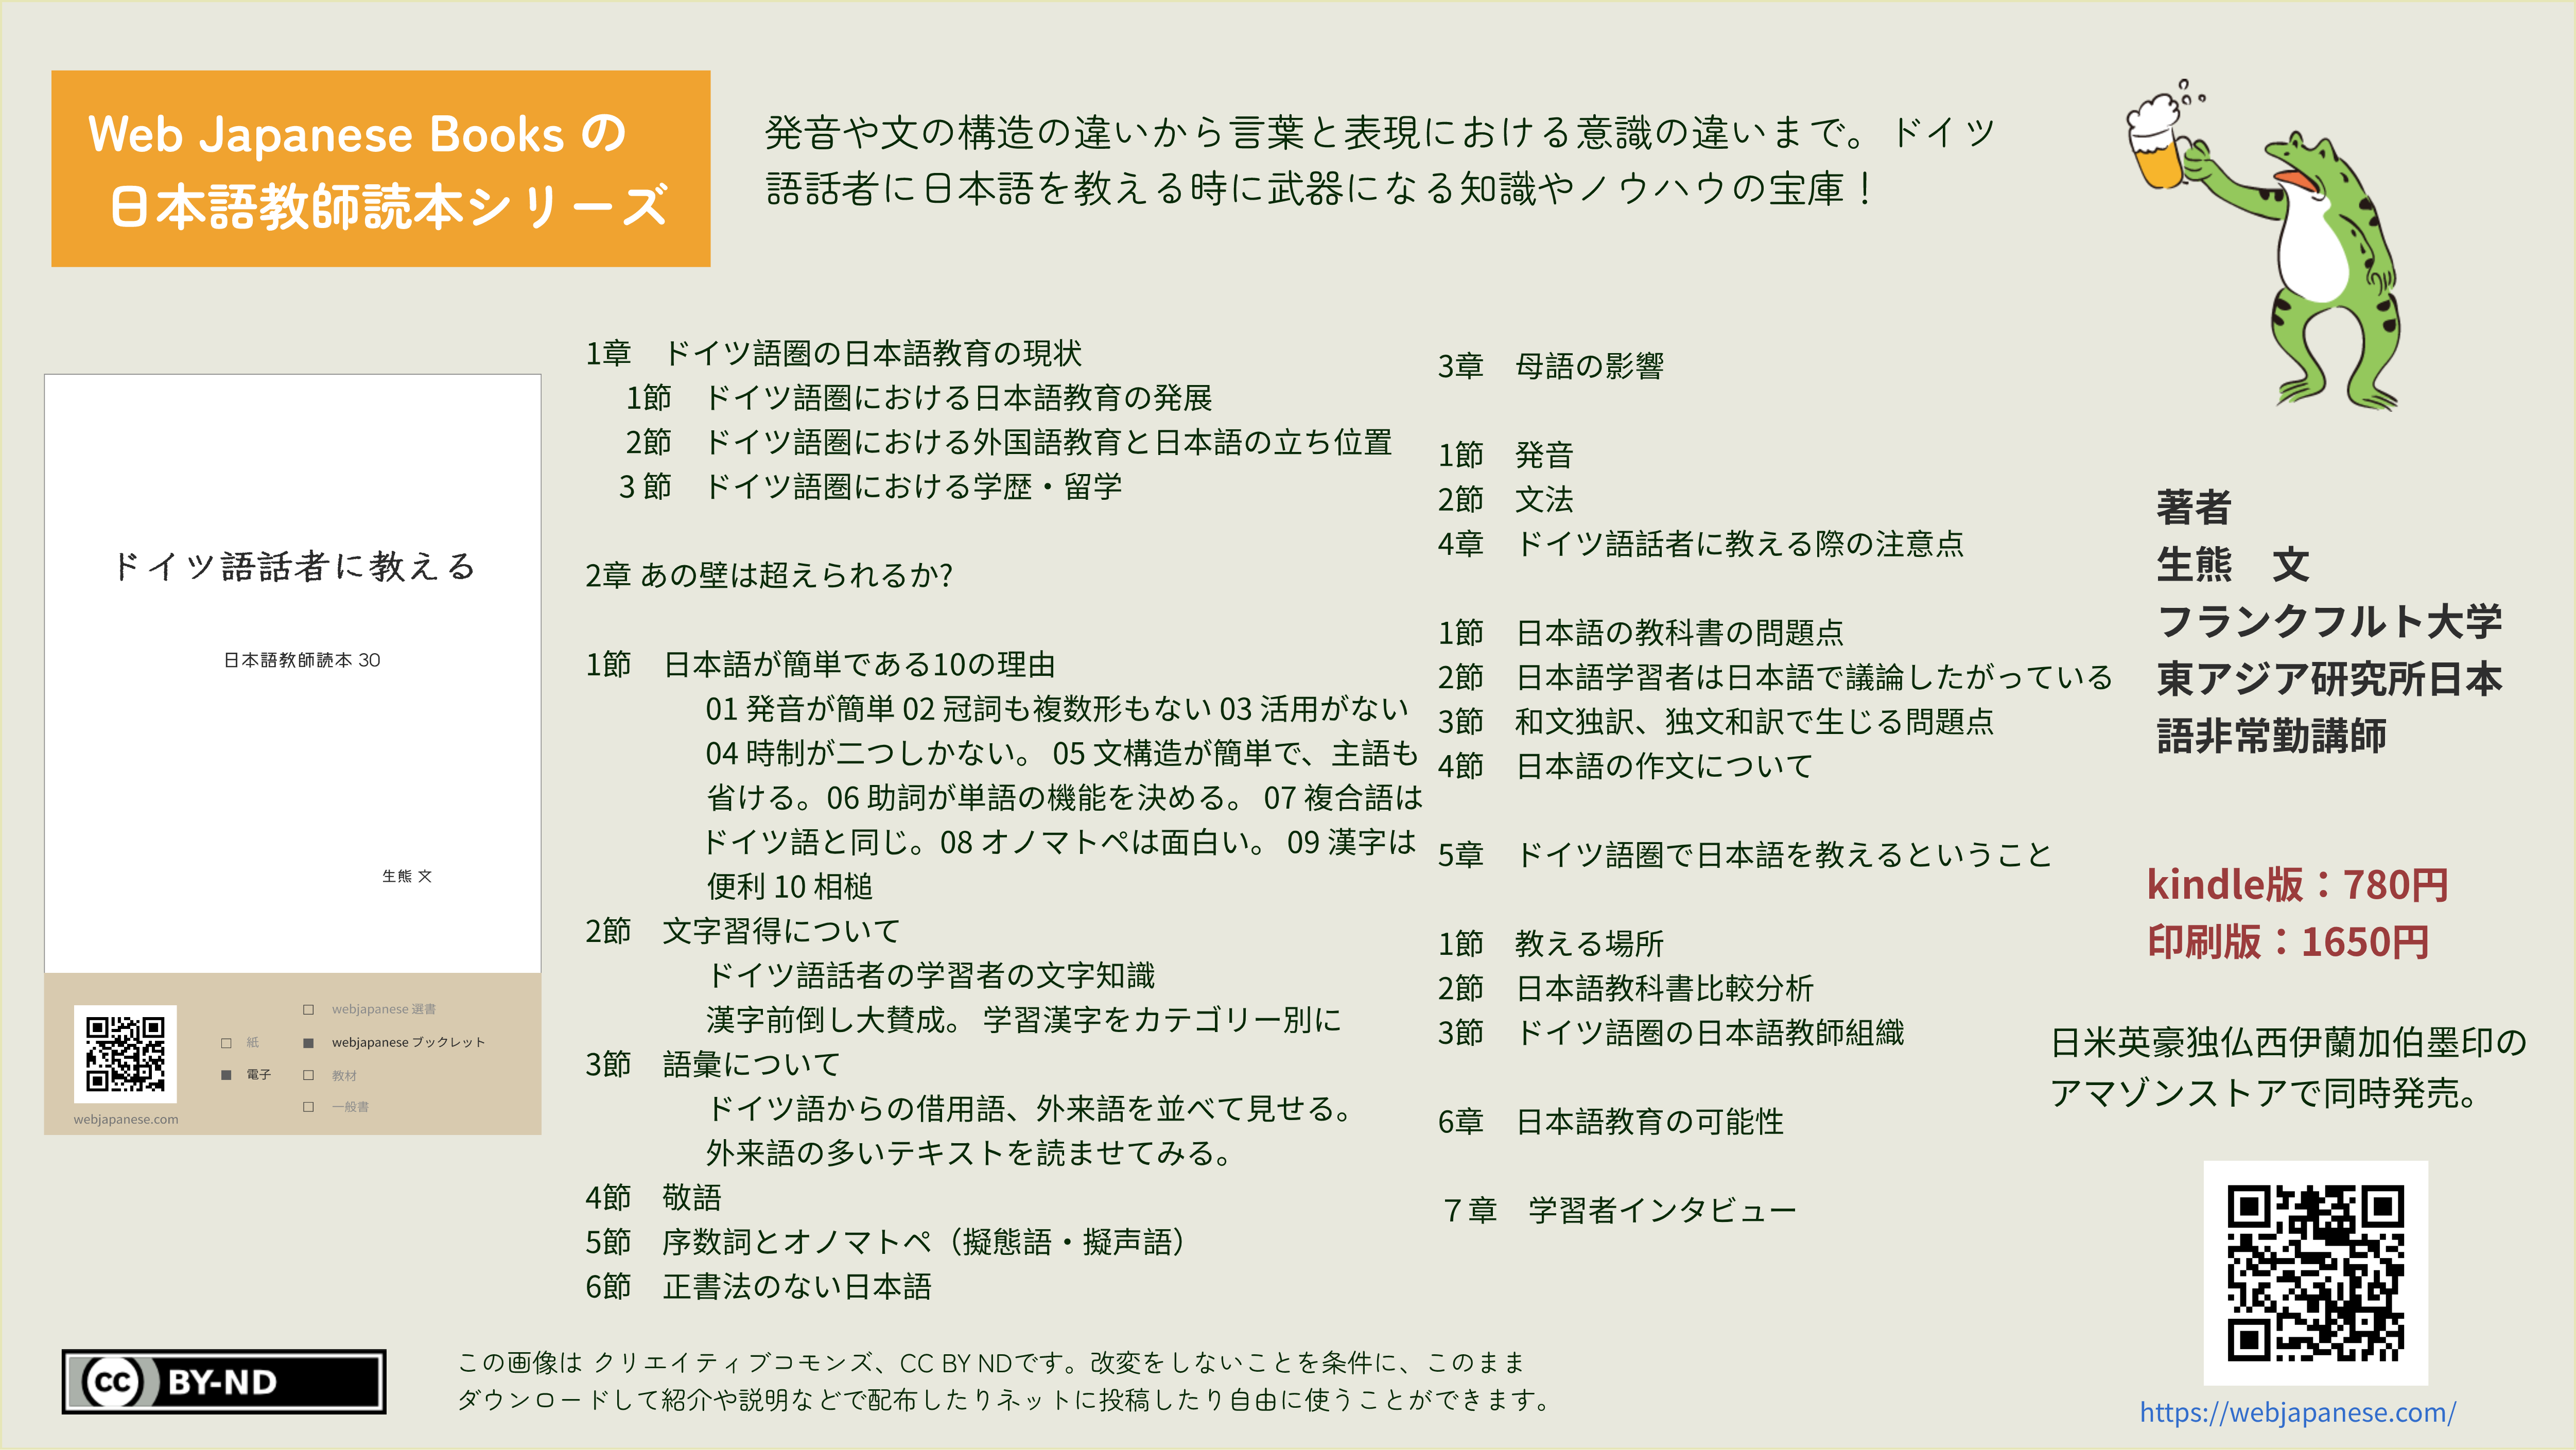 ドイツ語話者に教える 日本語教師読本 30 | WEB JAPANESE BOOKS